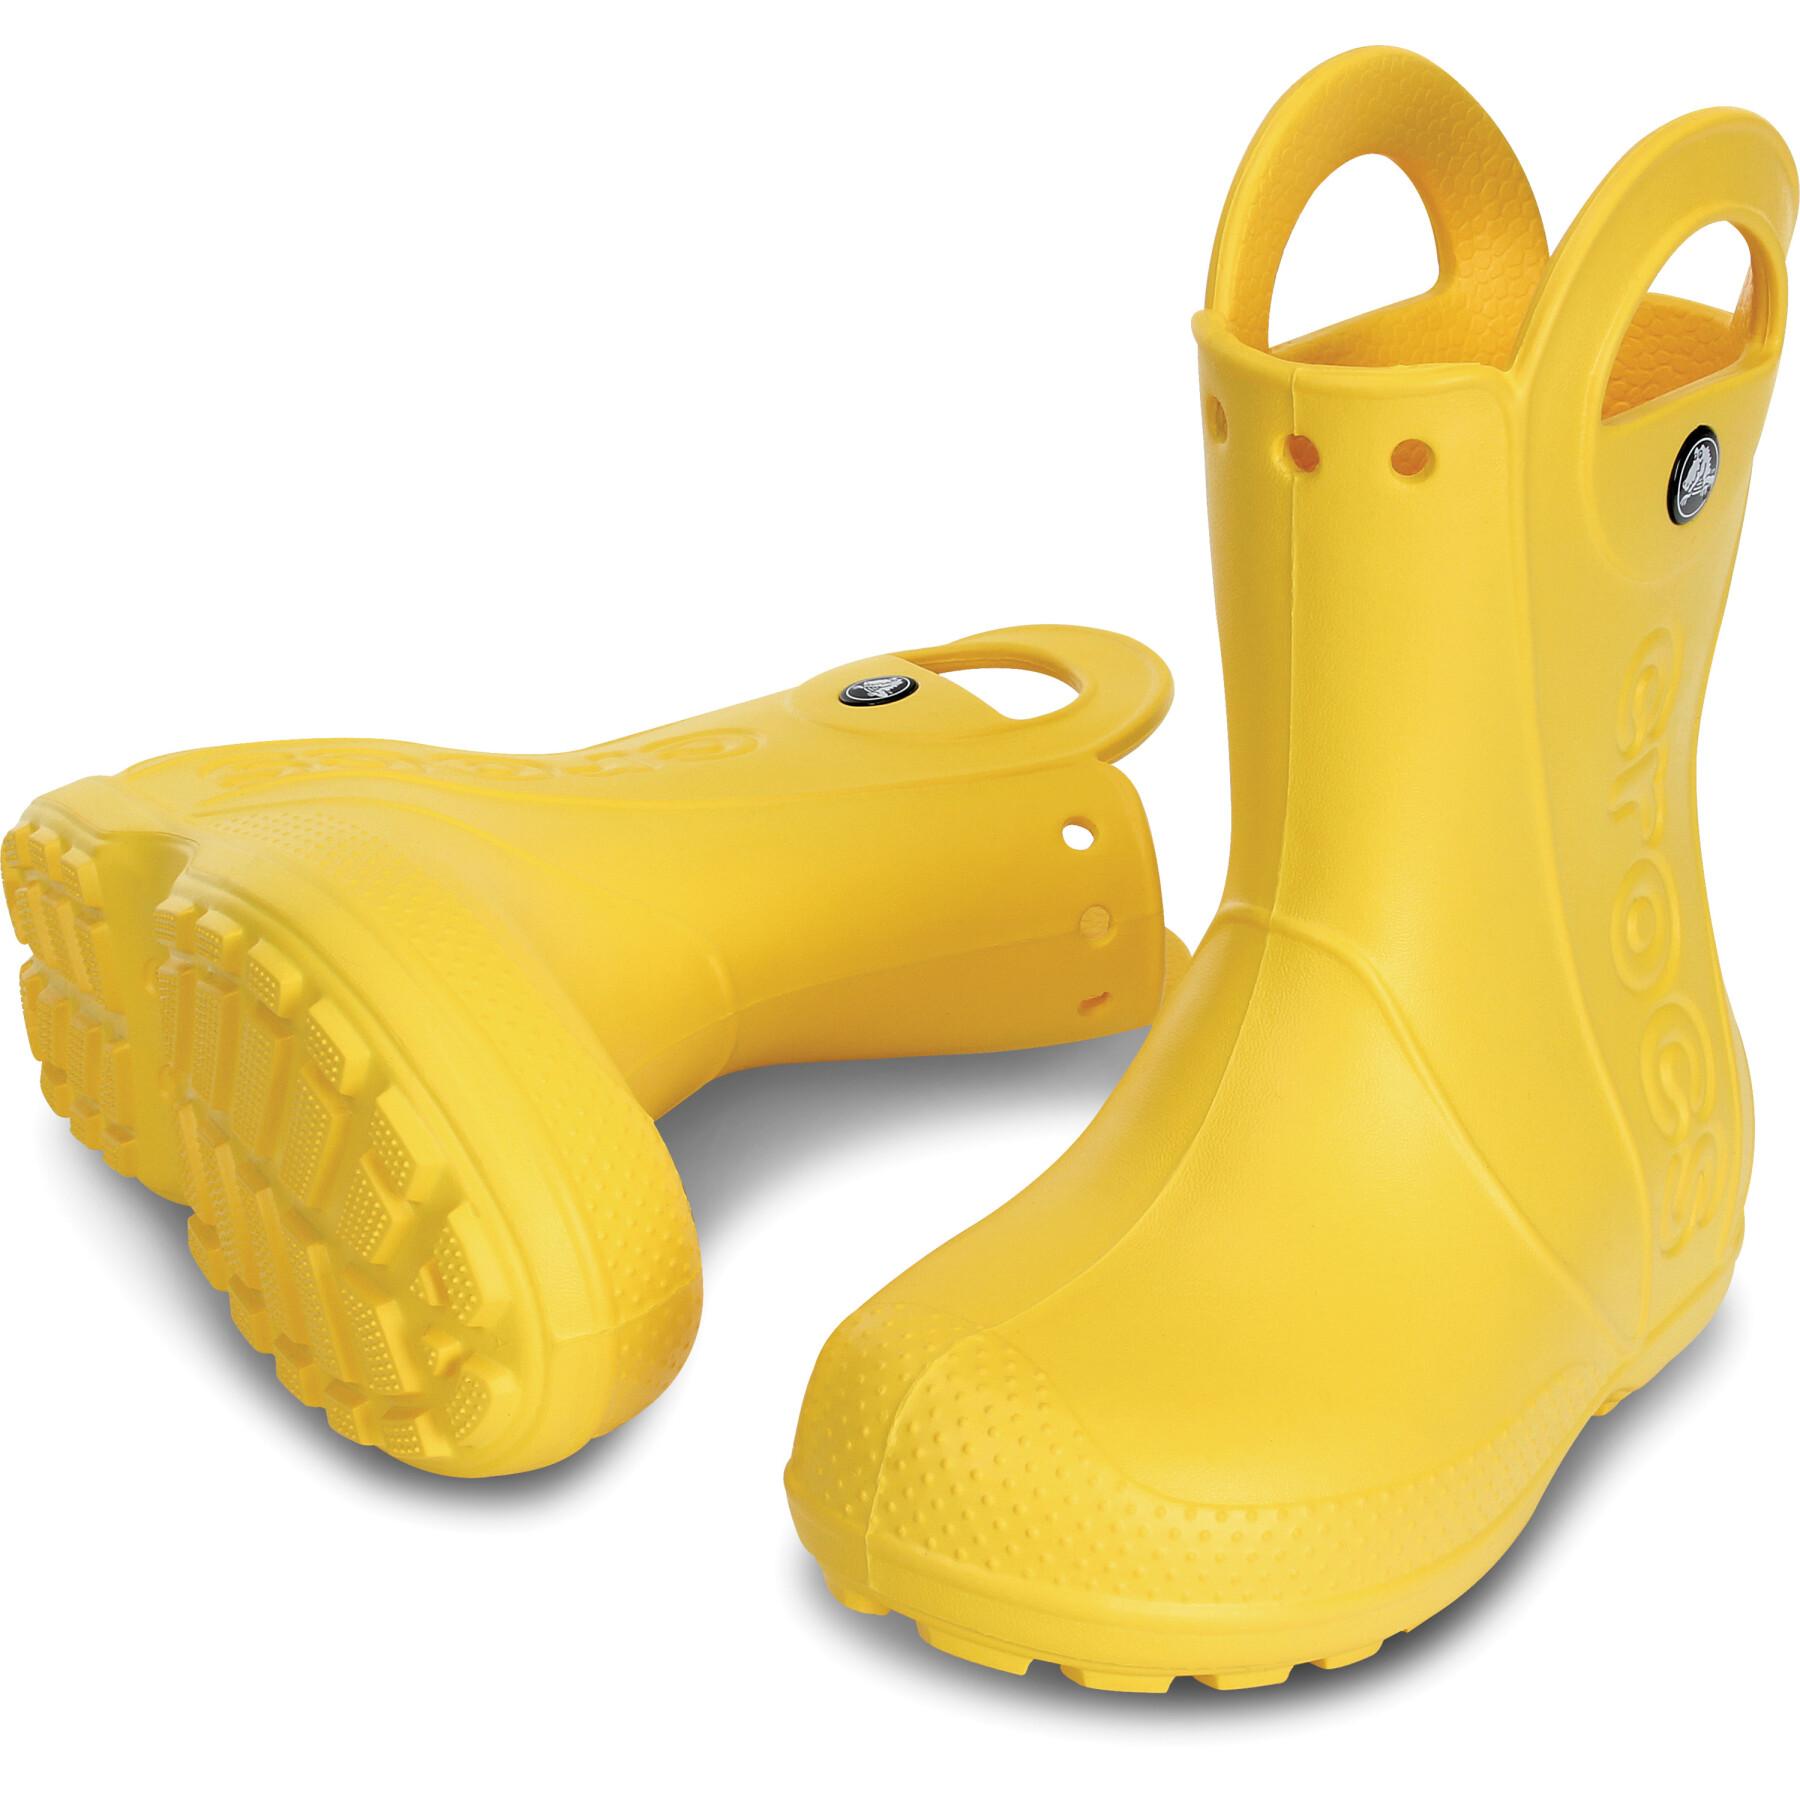 Kinder-Gummistiefel Crocs handle it rain